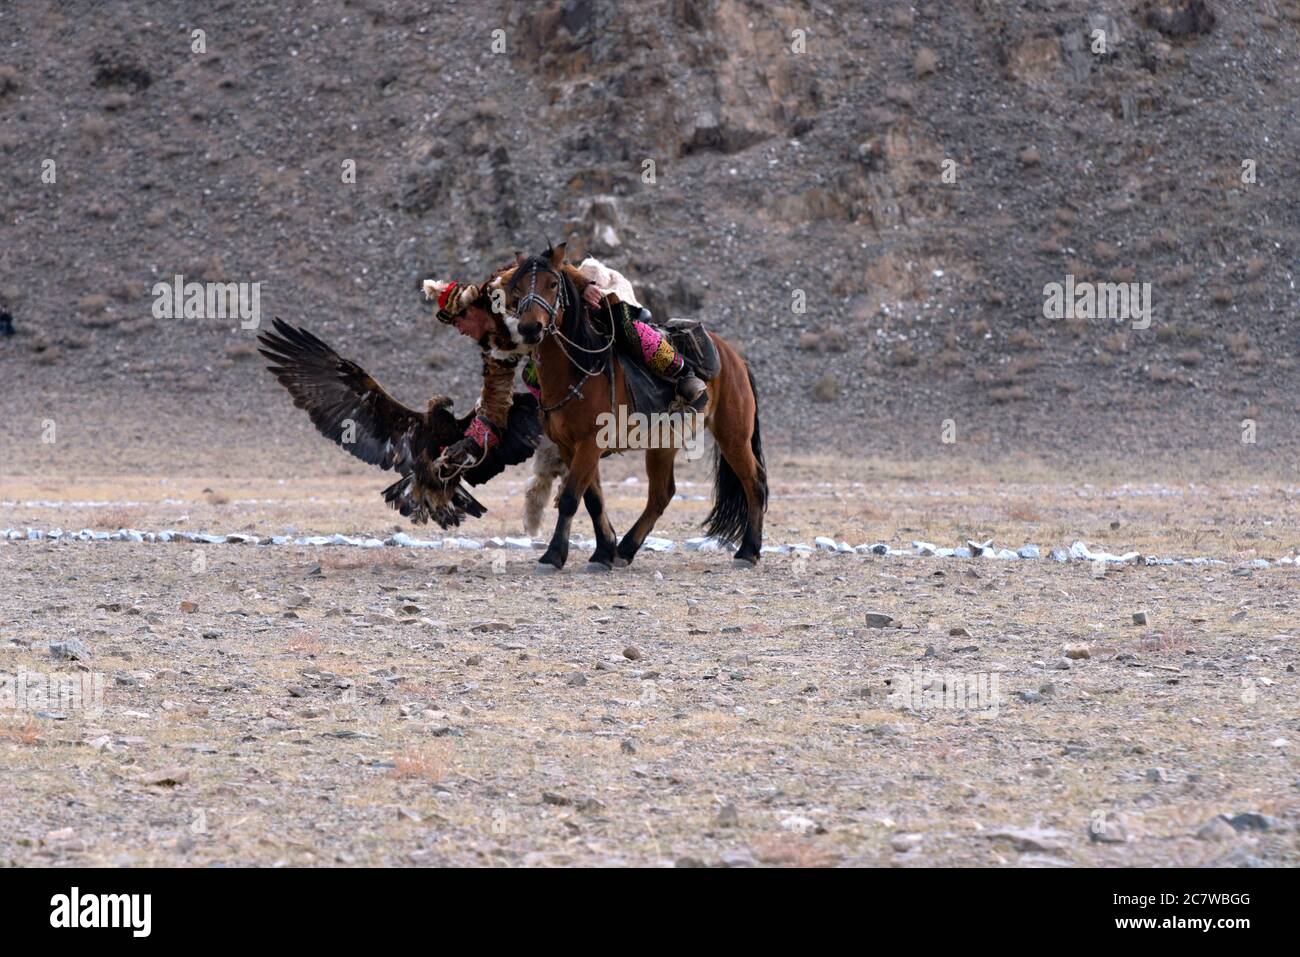 Un nomade kazakh de souche appelle avec succès son aigle doré à atterrir sur son bras au concours du Golden Eagle Festival à Olgii, dans l'ouest de la Mongolie. Banque D'Images